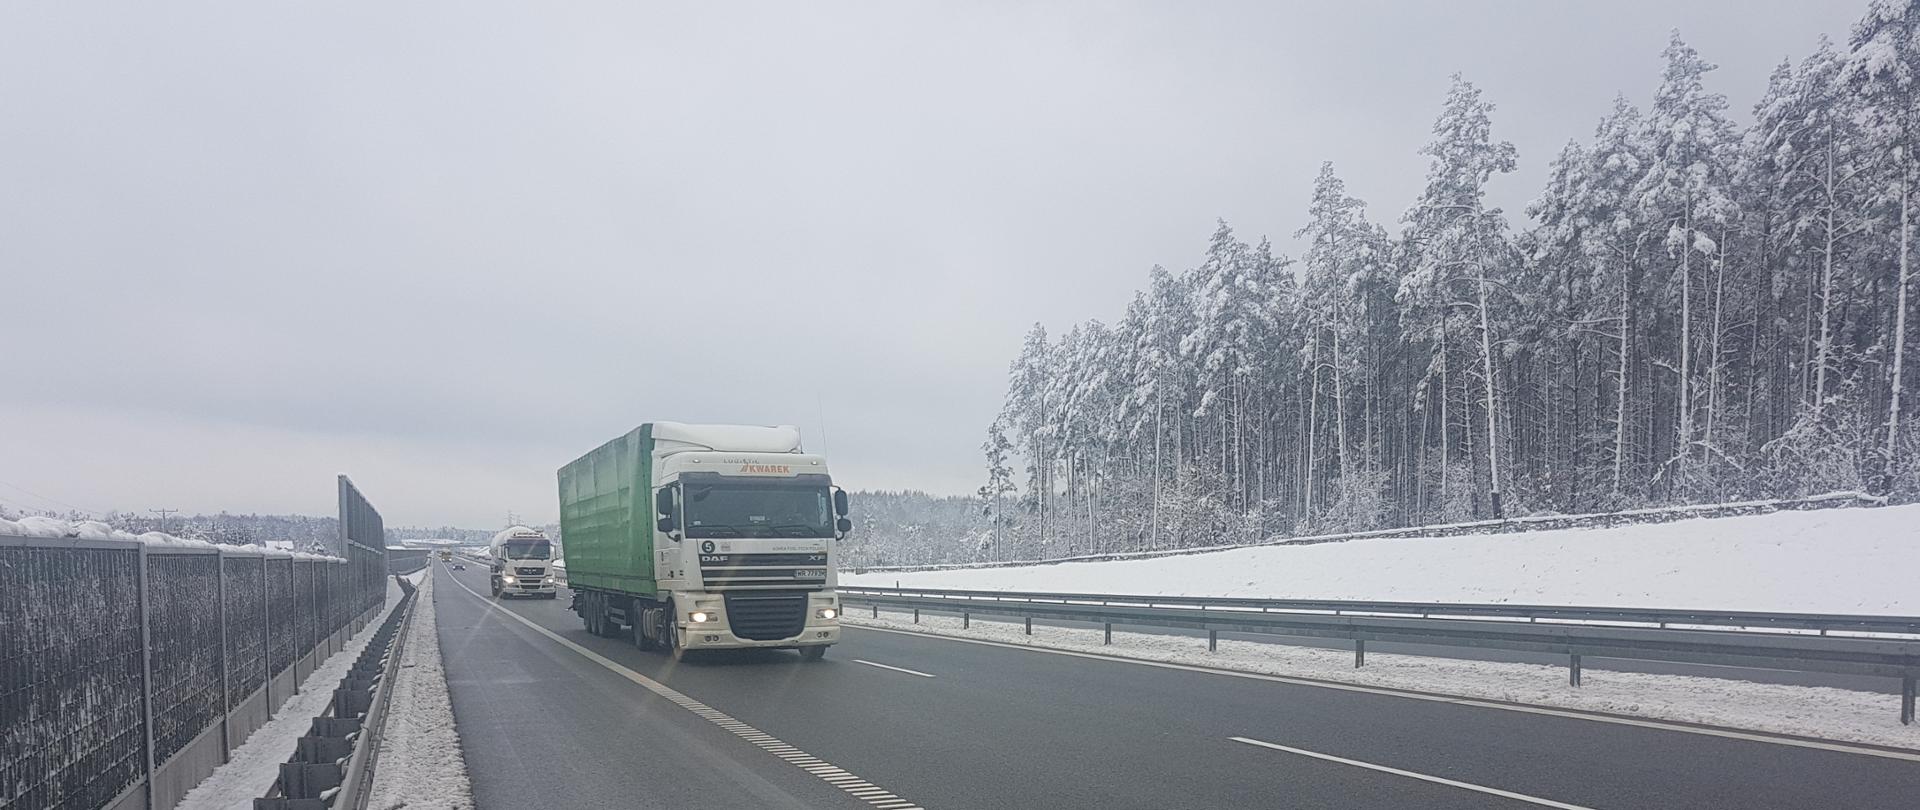 Droga ekspresowa zimą - odśnieżona jezdnia, jadące samochody ciężarowe jeden za drugim, przy drodze bariery i ekrany akustyczne, za nimi ośnieżone na biało drzewa 